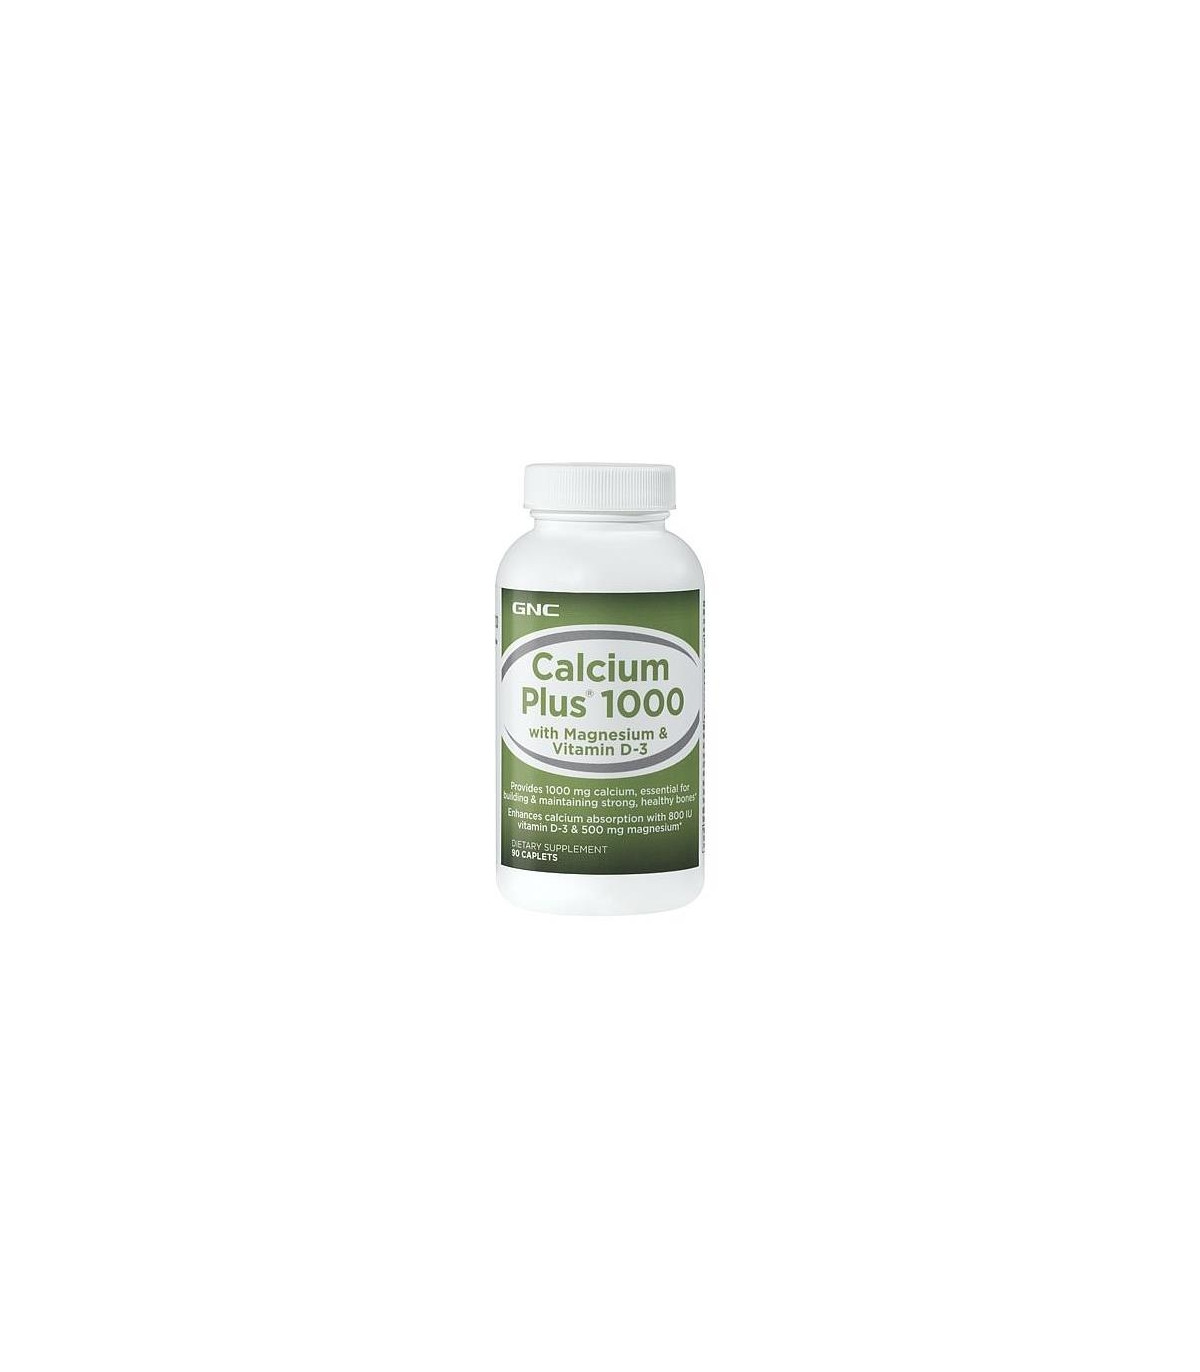 GNC Calcium Plus 1000 with Magnesium & Vitamin D-3 - 90 caplets